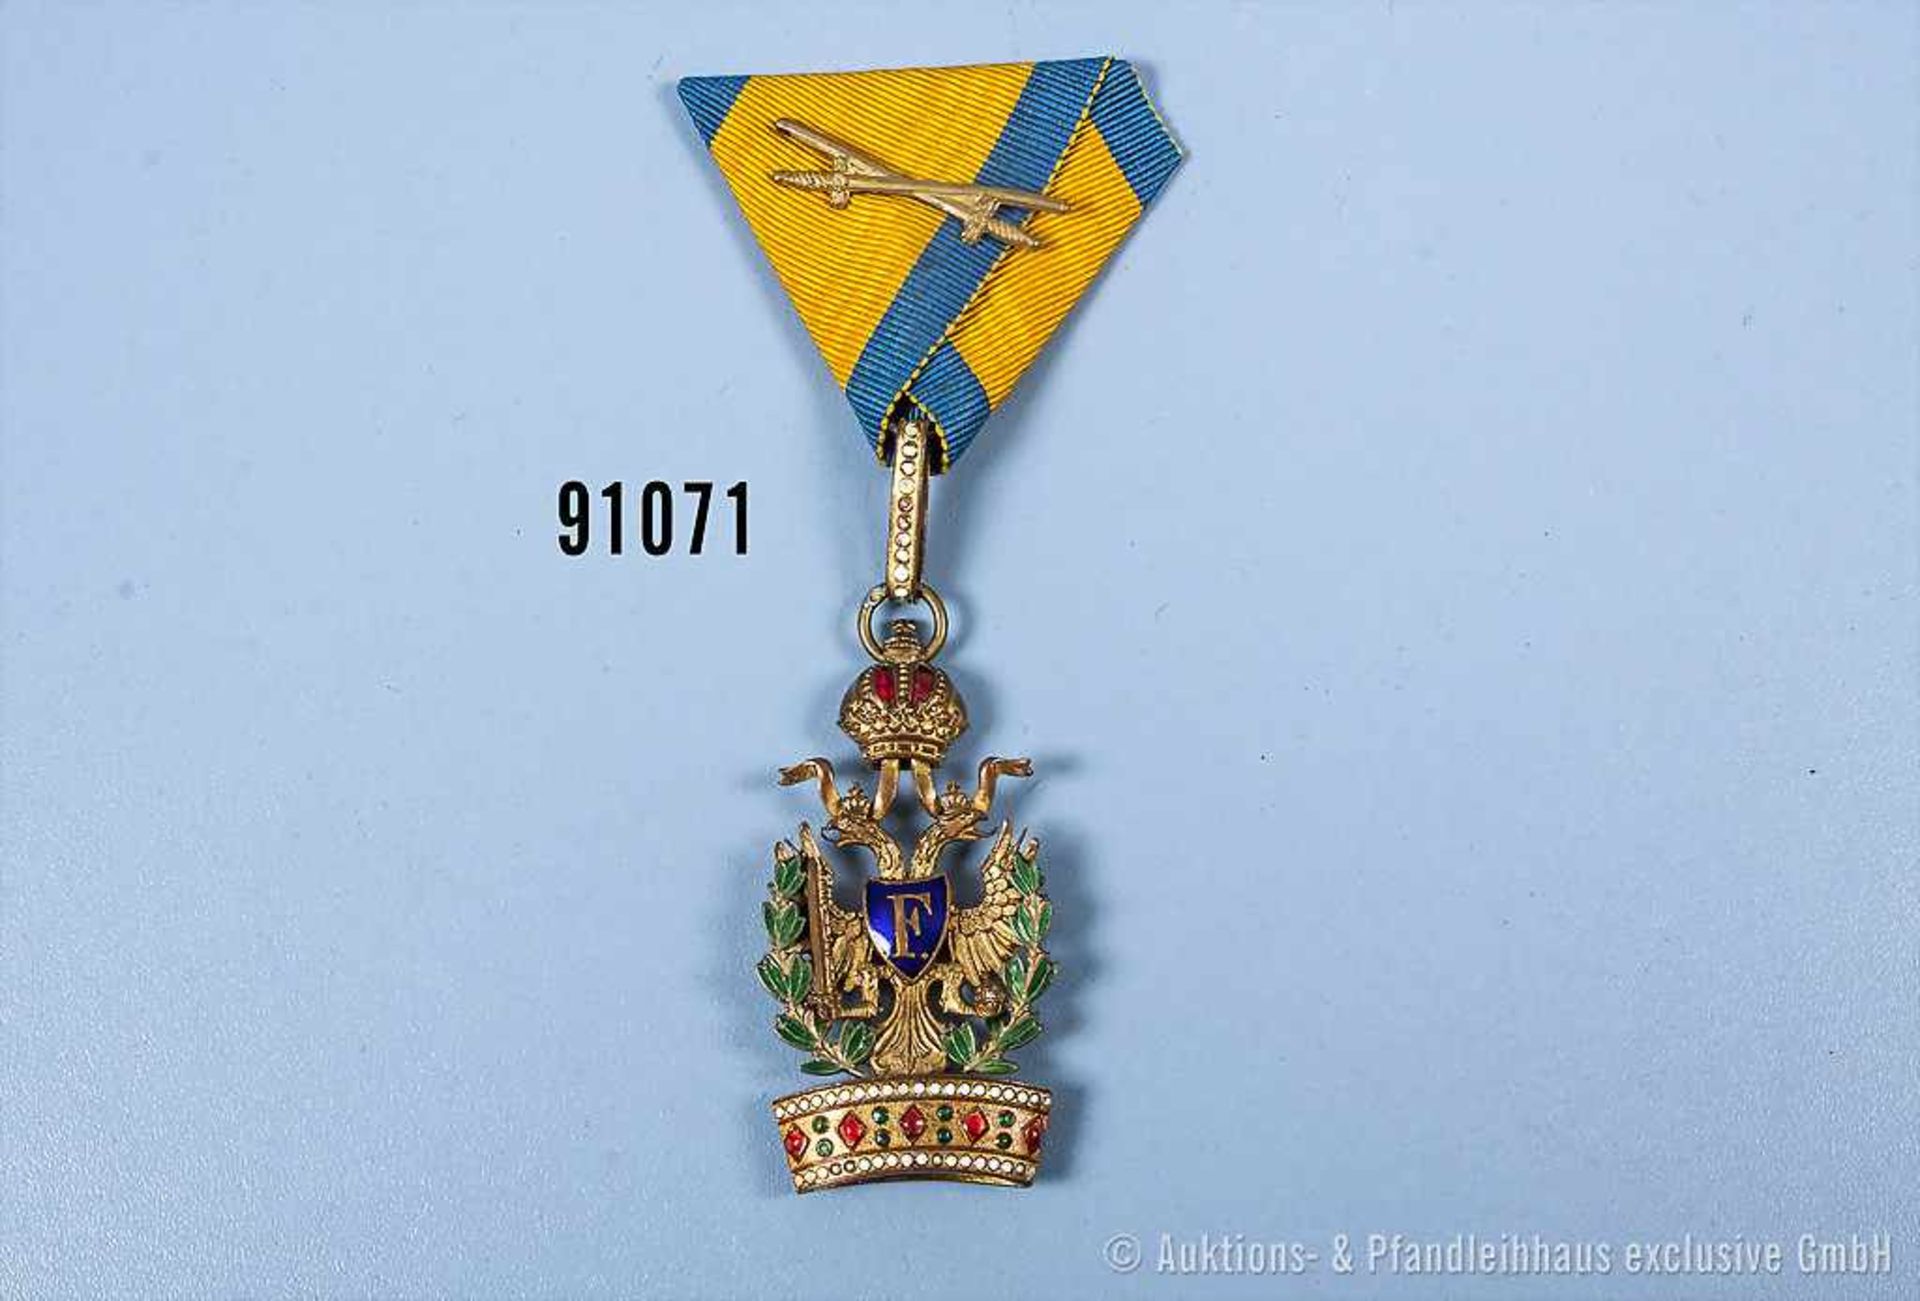 Österreich Orden der Eisernen Krone, 3. Klasse mit Kriegsdekoration und Schwerten auf dem Band,